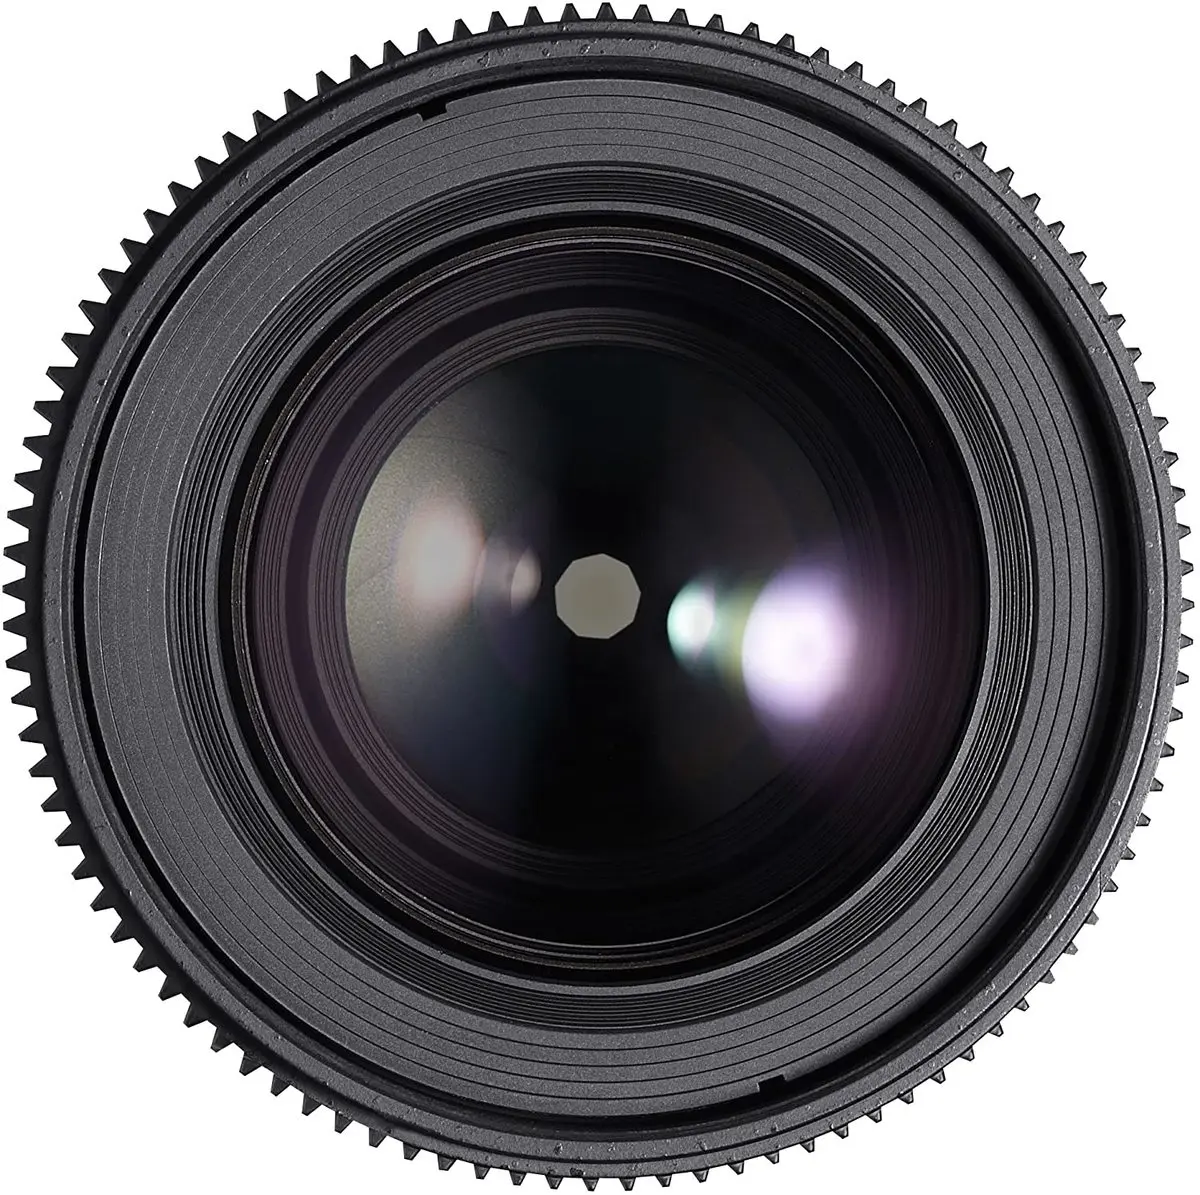 5. Samyang 100mm T3.1 VDSLR ED UMC MACRO (Canon) Lens